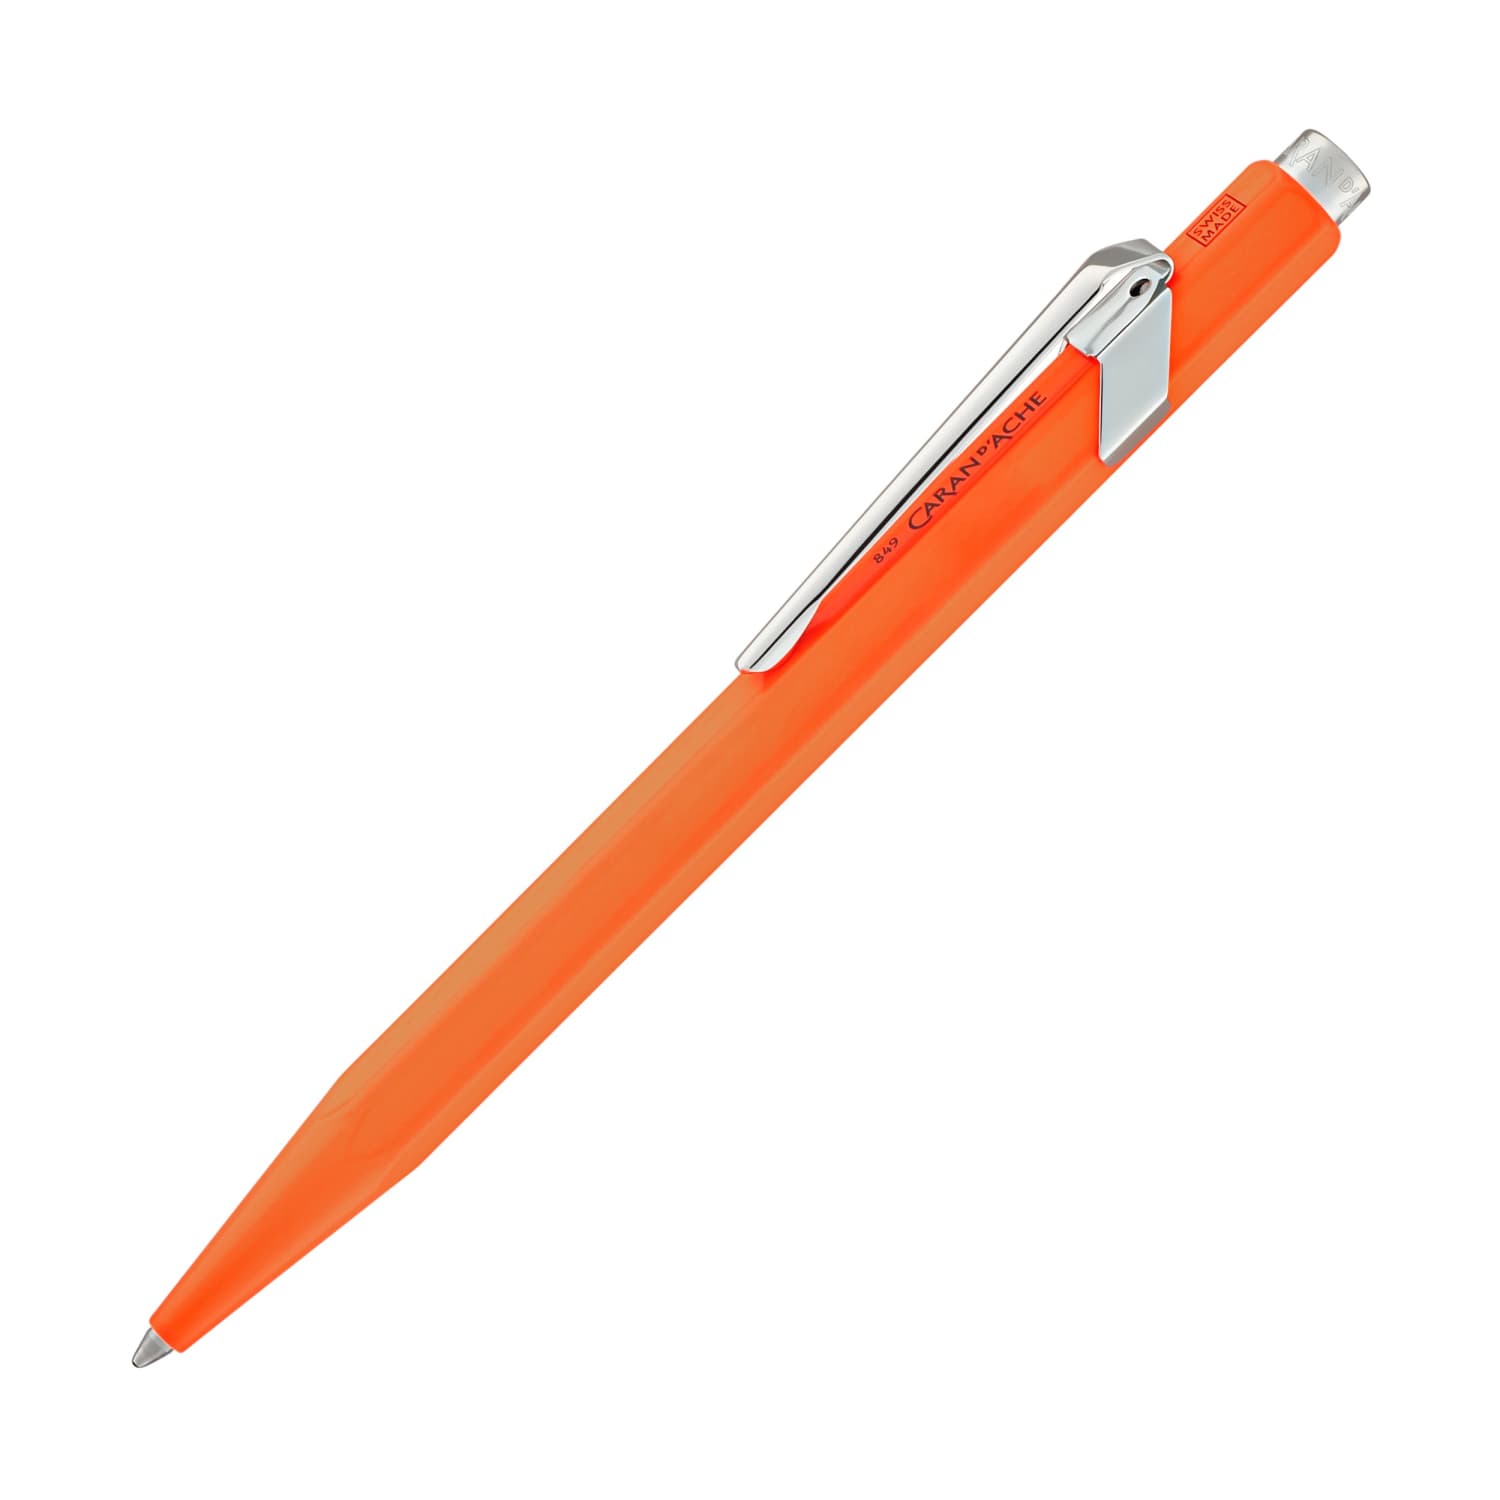 Caran d'Ache 849 Metal Collection Ballpoint Pen in Fluorescent